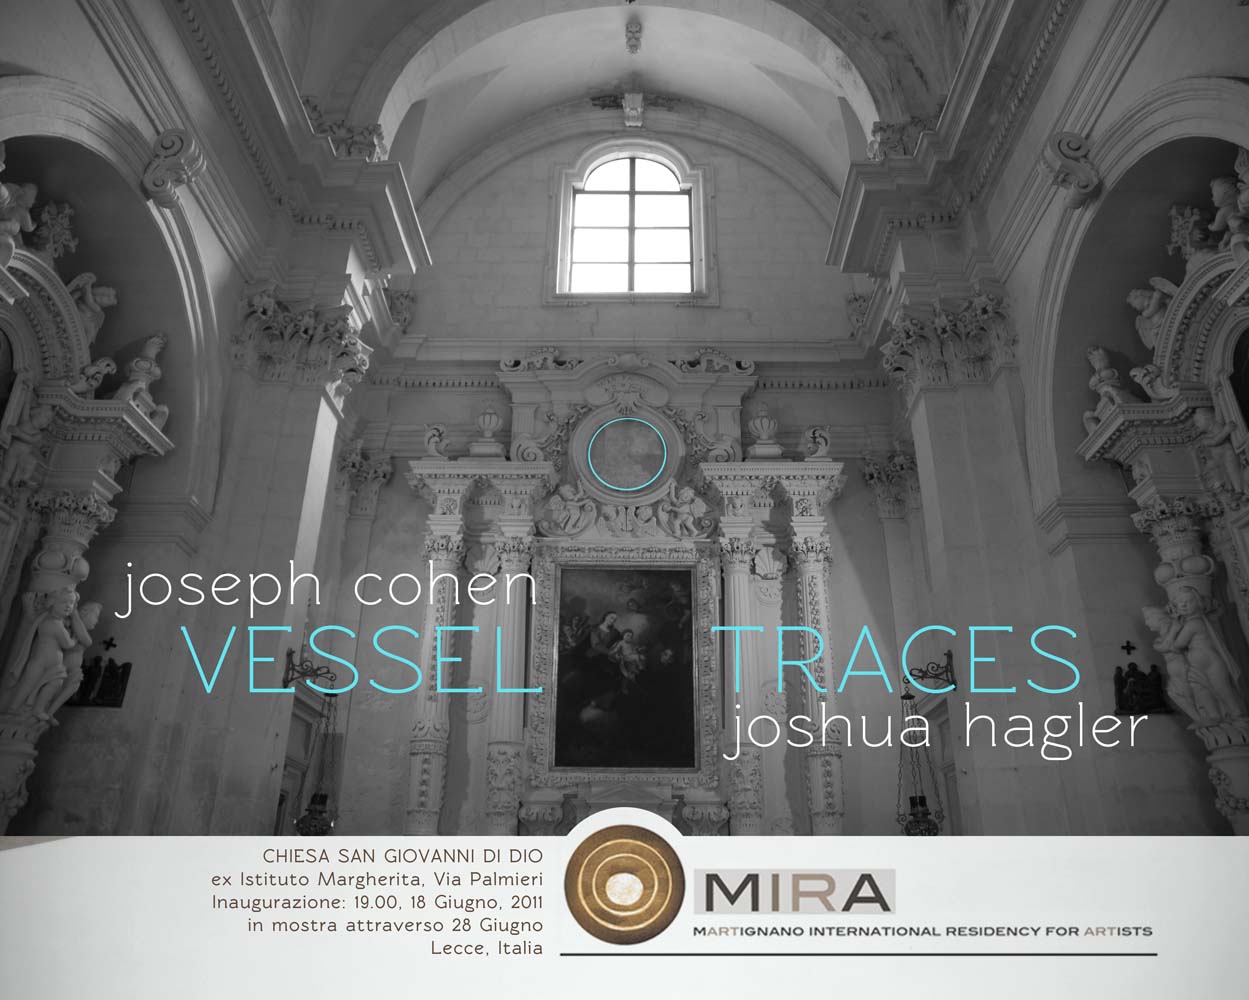 Joseph Cohen / Joshua Hagler – Vessell Traces